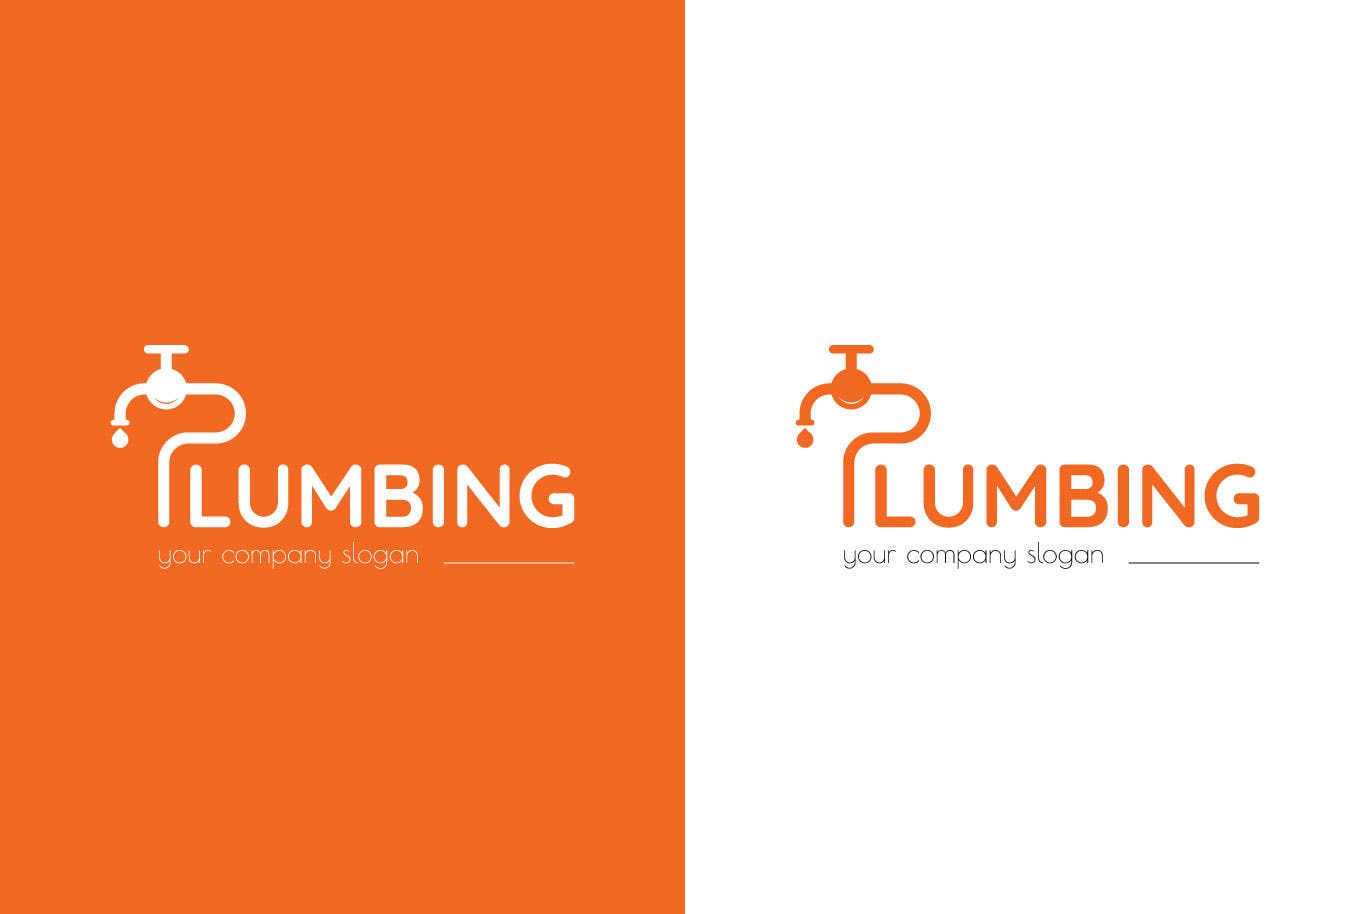 字母P图形供水设施品牌Logo设计第一素材精选模板 Plumbing Business Logo Template插图(1)